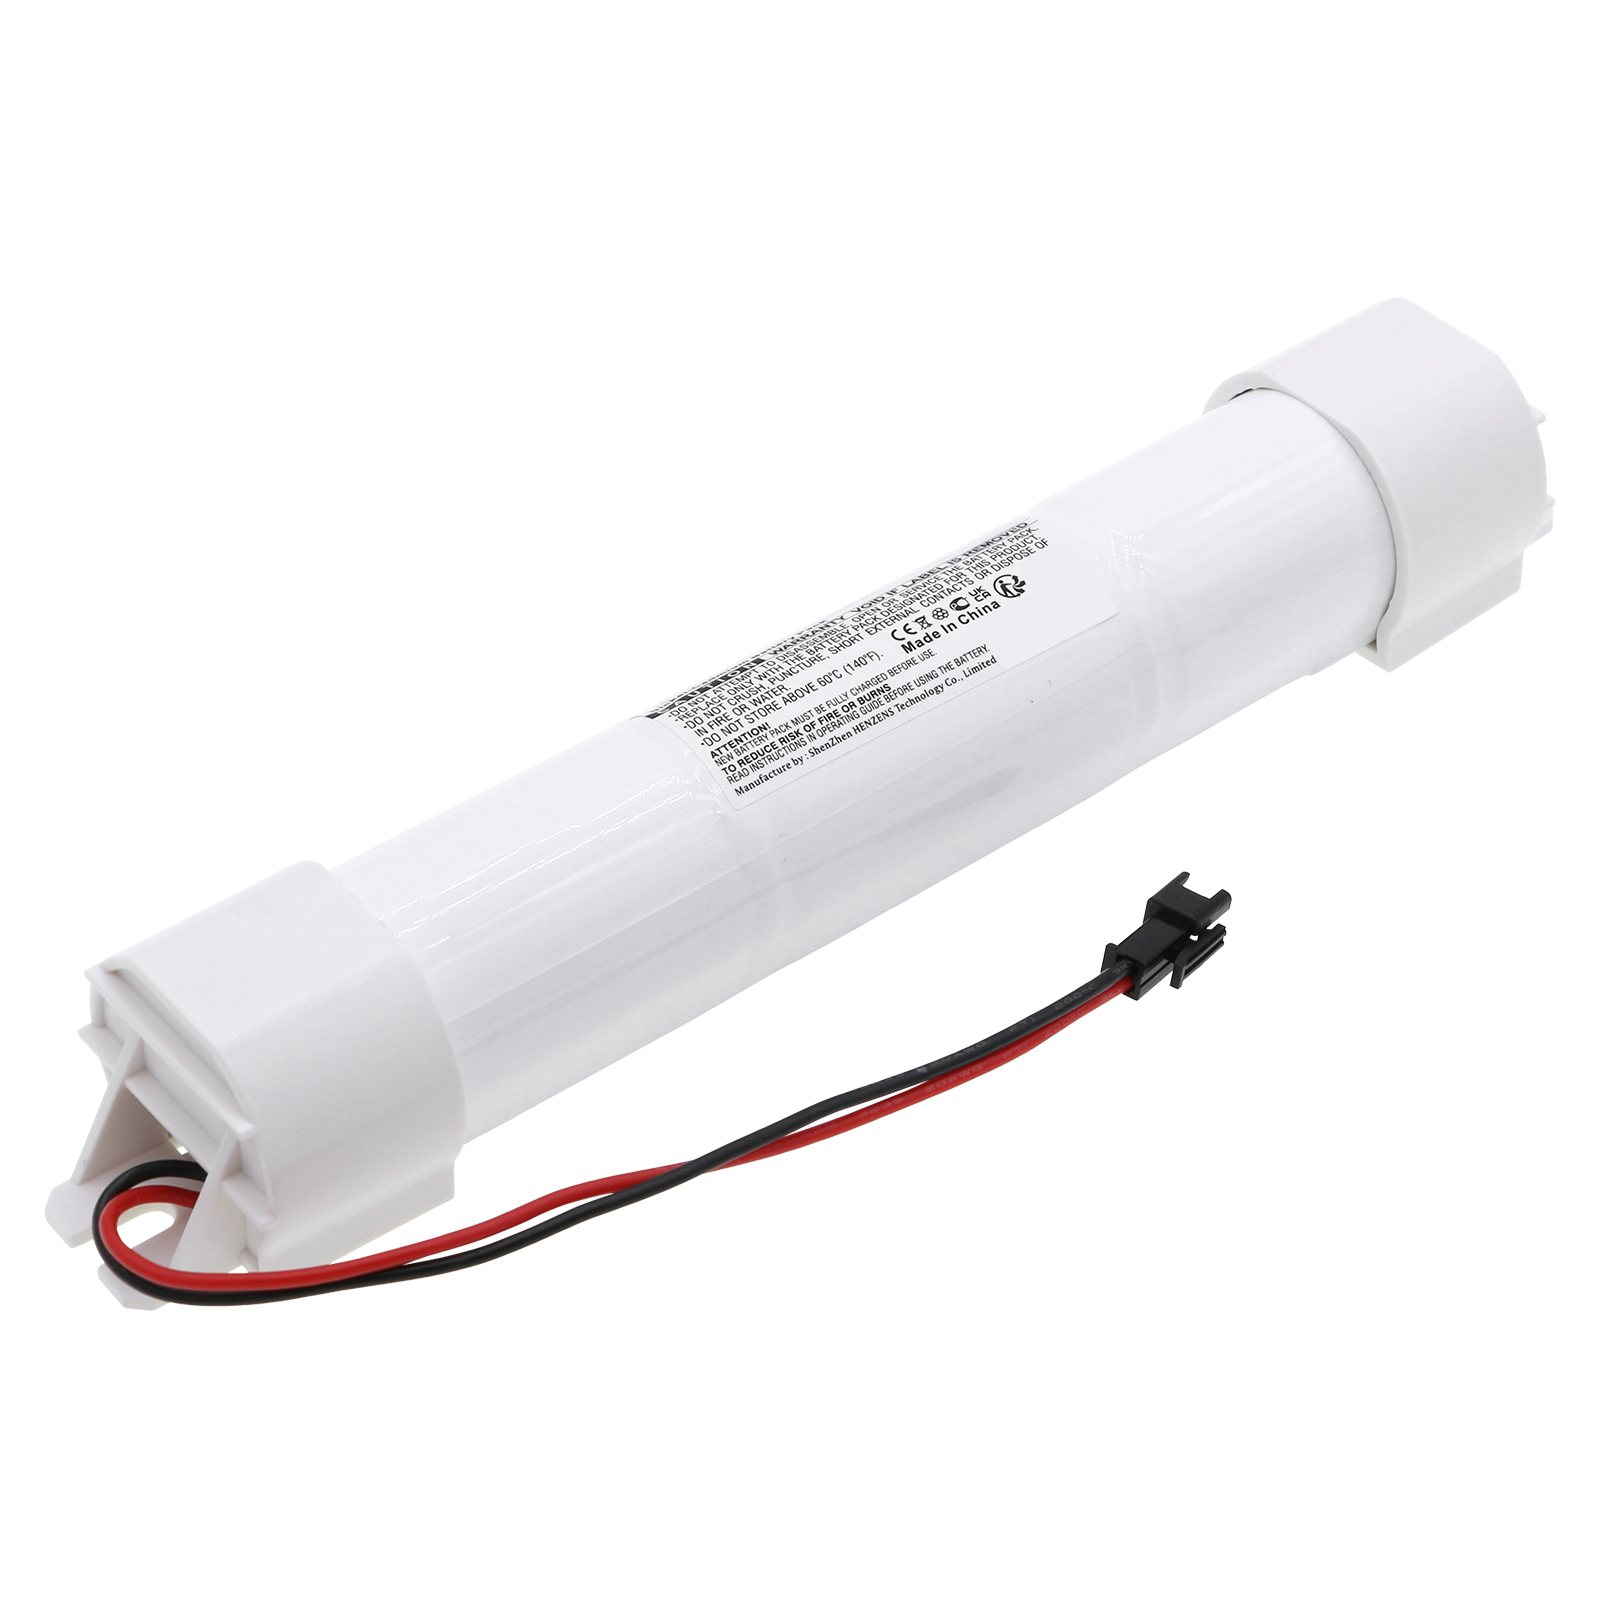 Synergy Digital Emergency Lighting Battery, Compatible with ARSEL AK-58 Emergency Lighting Battery (Ni-CD, 3.6V, 4000mAh)